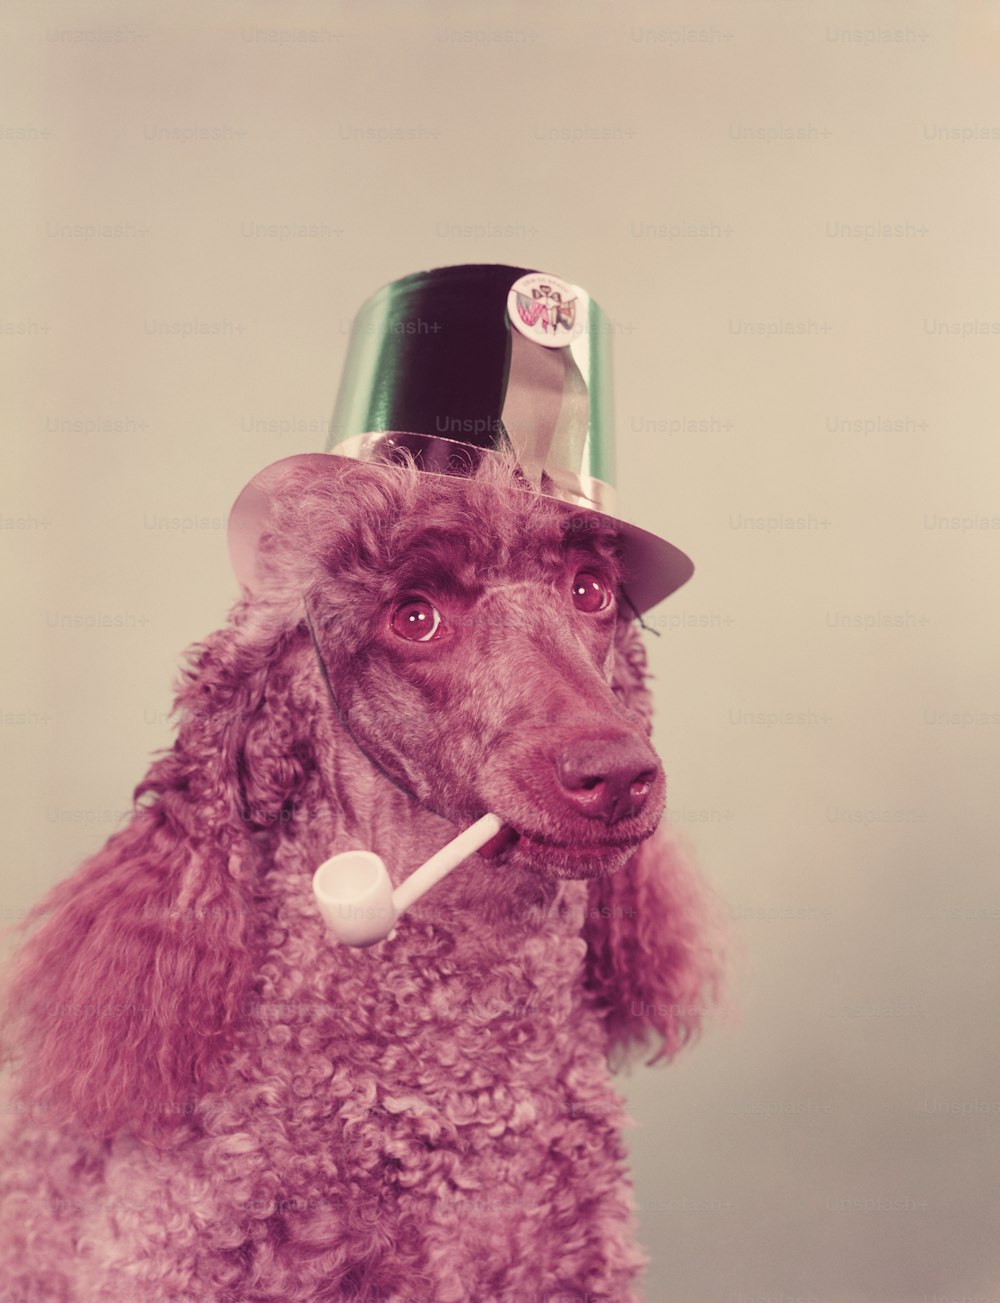 アメリカ合衆国 - 1960年代頃:聖パトリックの日のために緑色の紙のパーティーハットをかぶった、パイプを口にくわえたプードル犬。